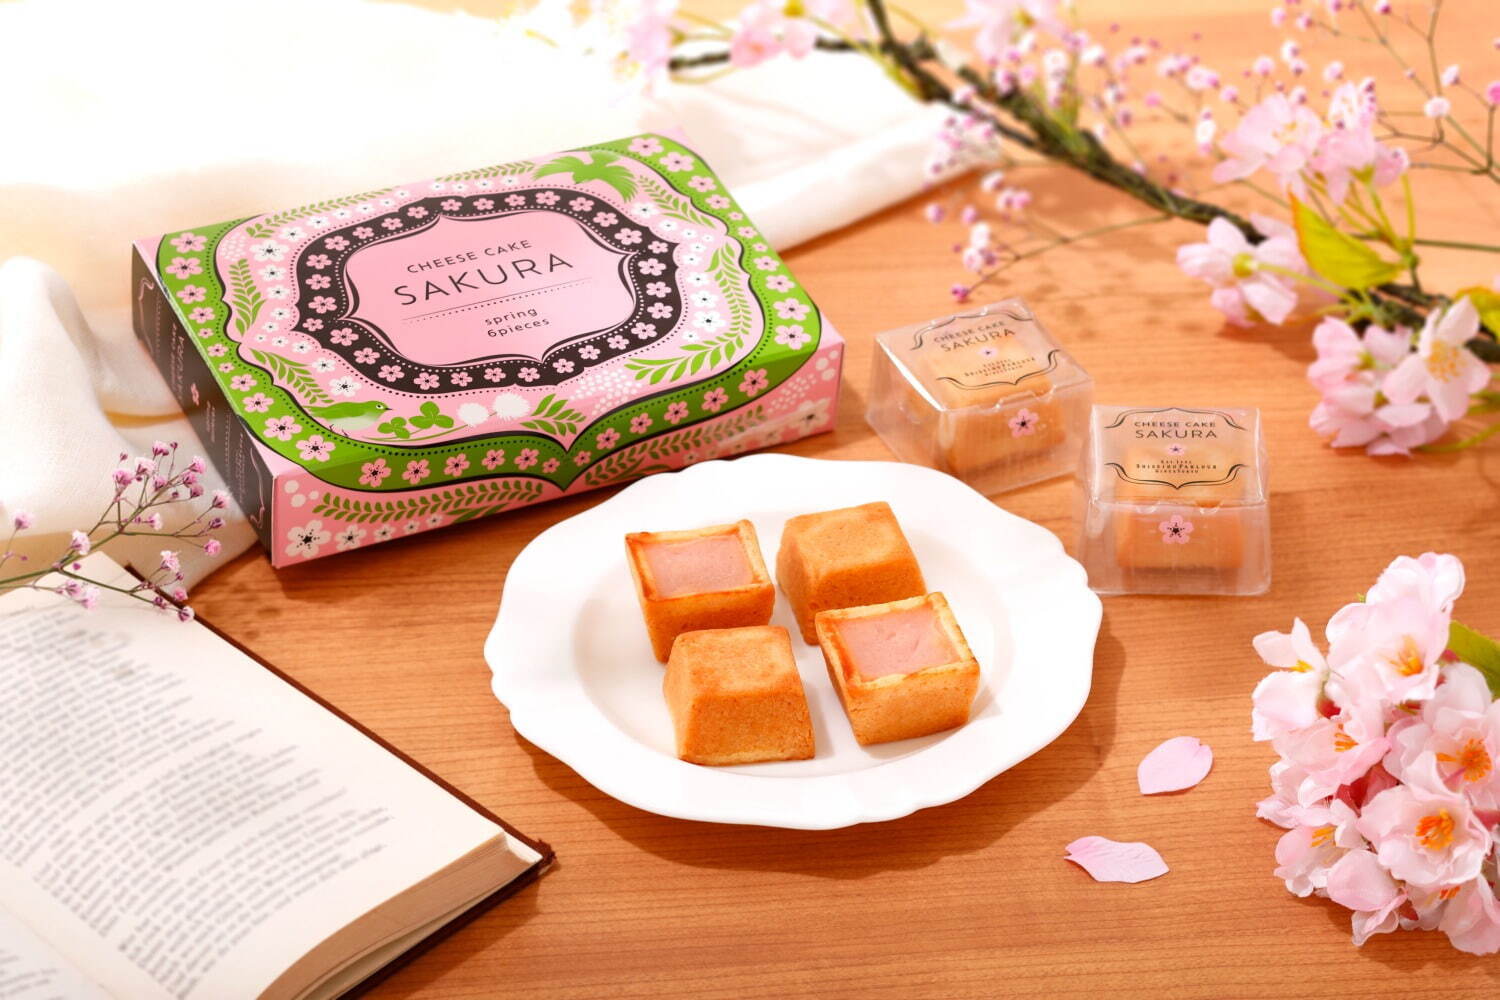 「春のチーズケーキ(さくら味)」3個入 1,080円、6個入 2,160円